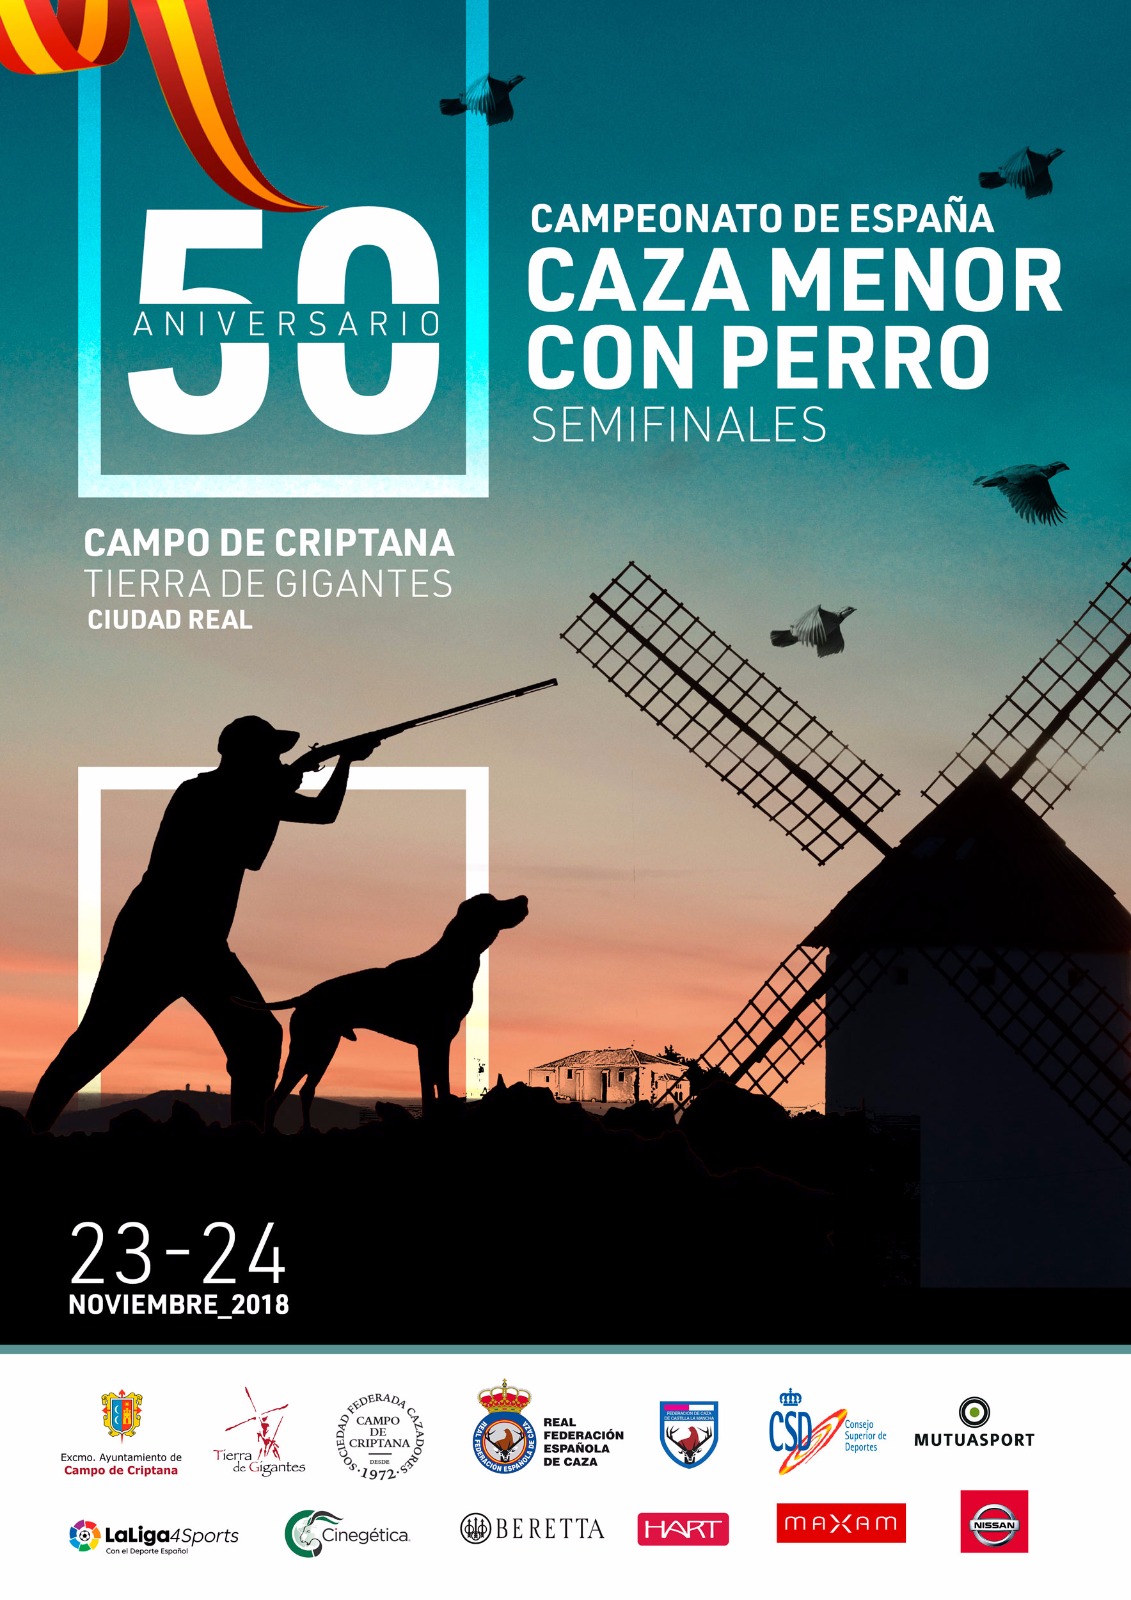 L Campeonato de España de Caza Menor con Perro y I Copa de Campeones de España de Caza Menor con Perro 